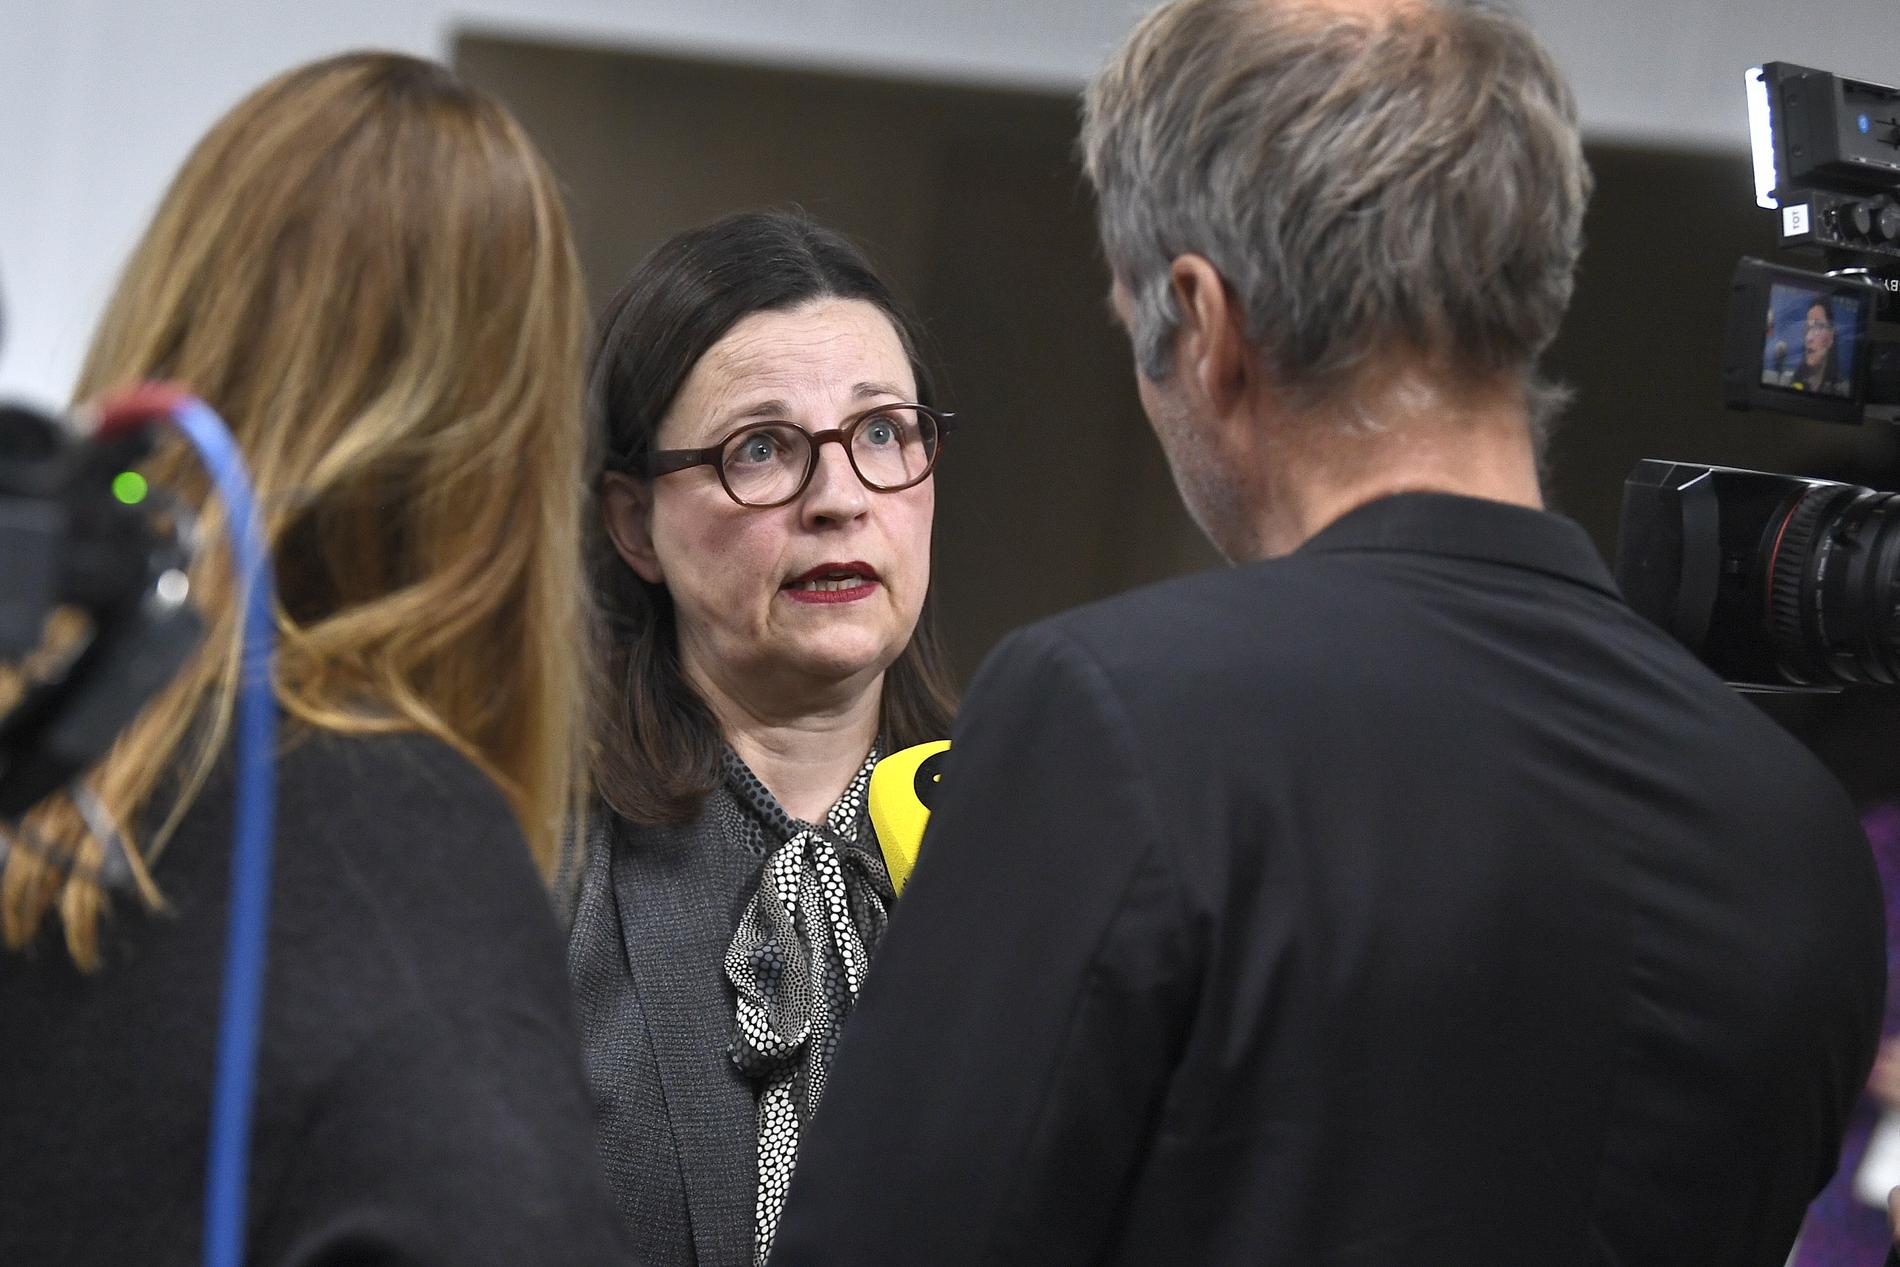 "Svensk skola står stark", sade utbildningsminister Anna Ekström (S) när hon i kommenterade den senaste Pisarapporten i december 2019. Drygt två år senare får hon och regeringen kritik av Riksrevisionen.